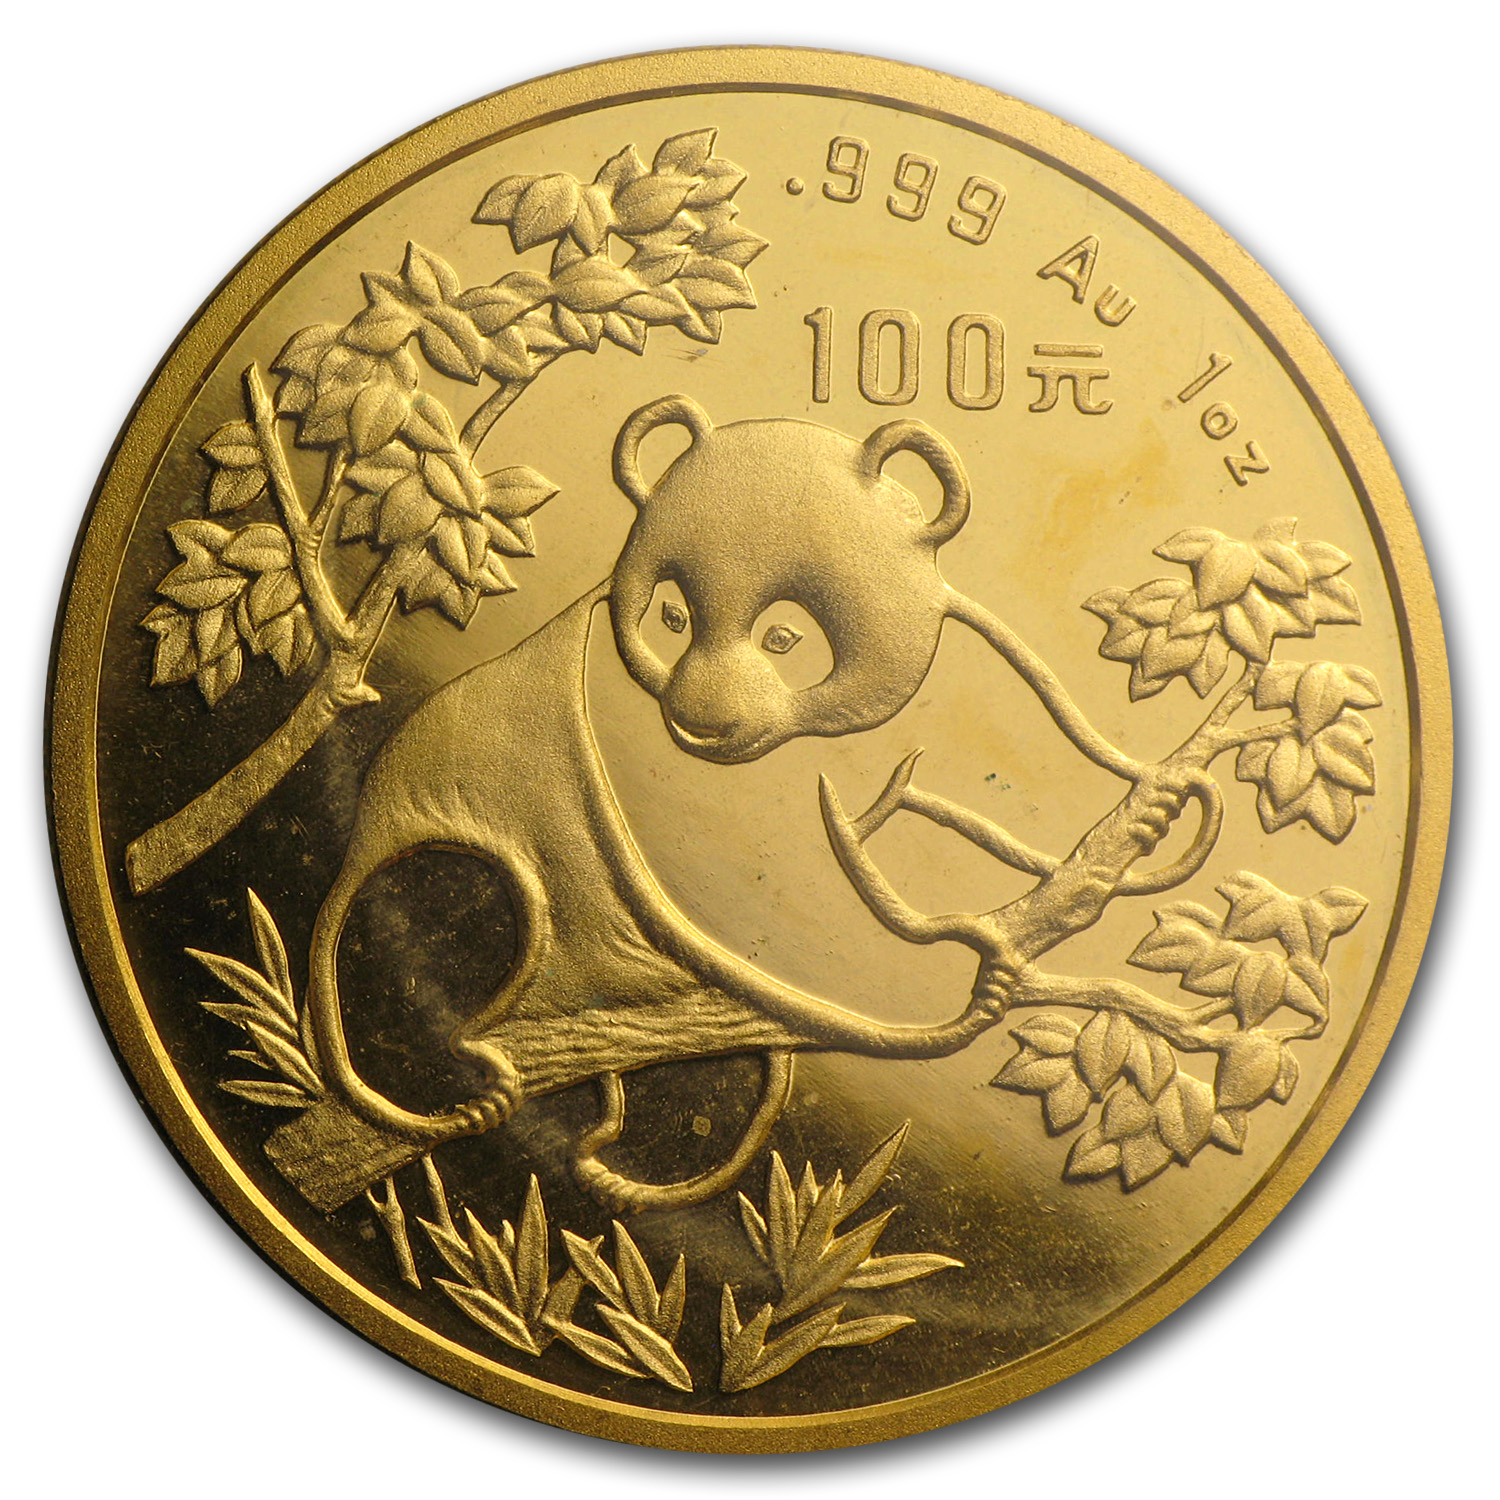 Buy 1992 China 1 oz Gold Panda Small Date BU (Sealed)